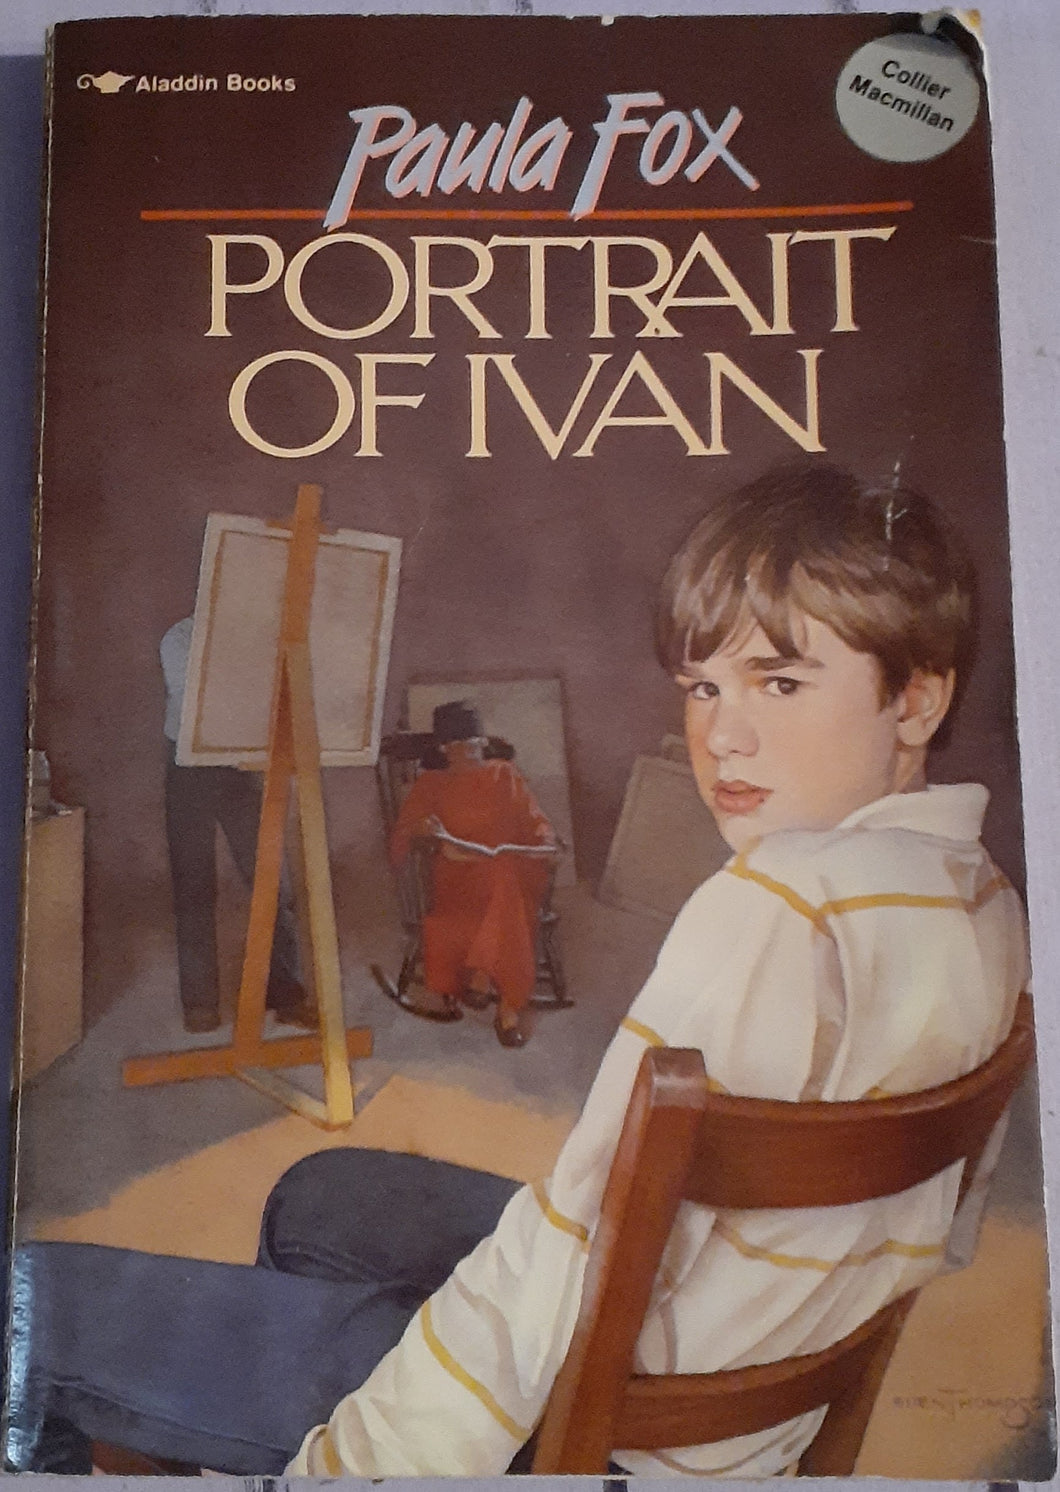 Portrait of Ivan